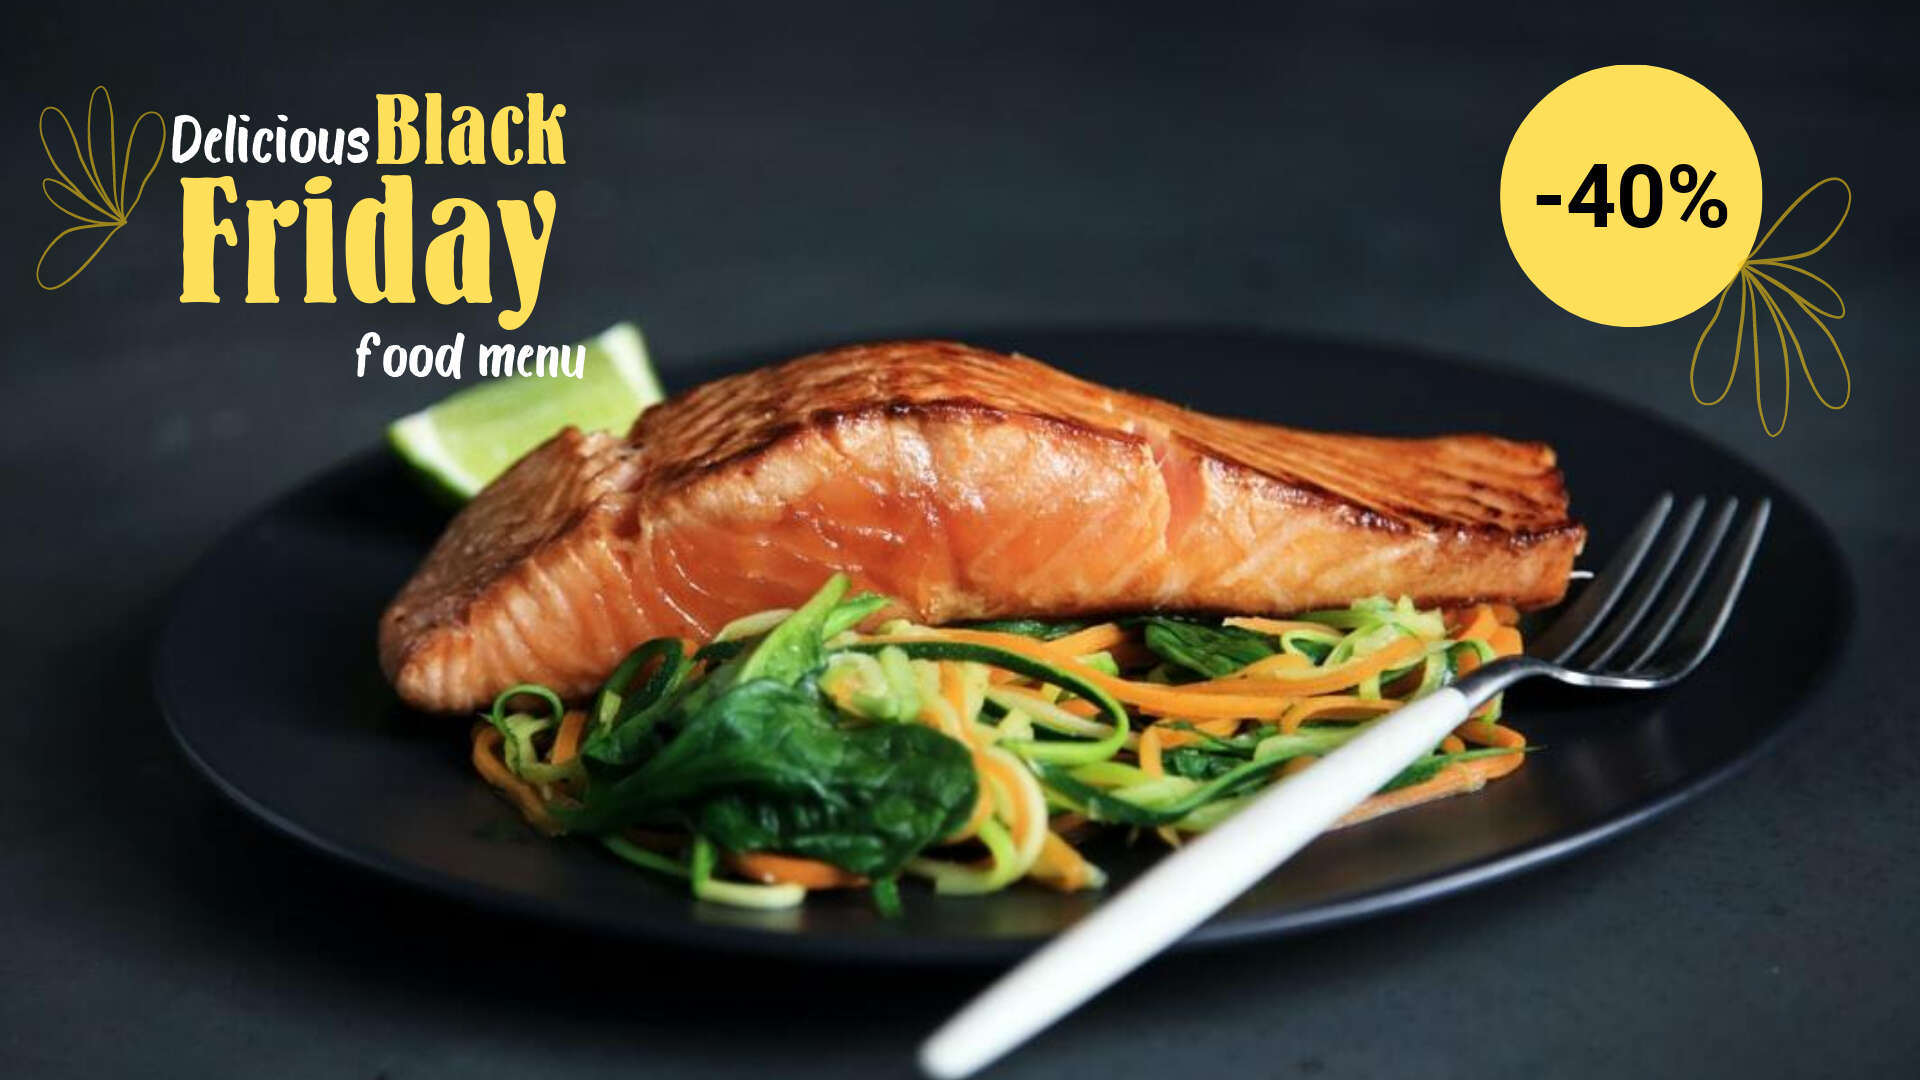 Стейк гриль из семги с салатом из свежих овощей на плоской матовой черной тарелке с ярким желтым шрифтом для Black Friday